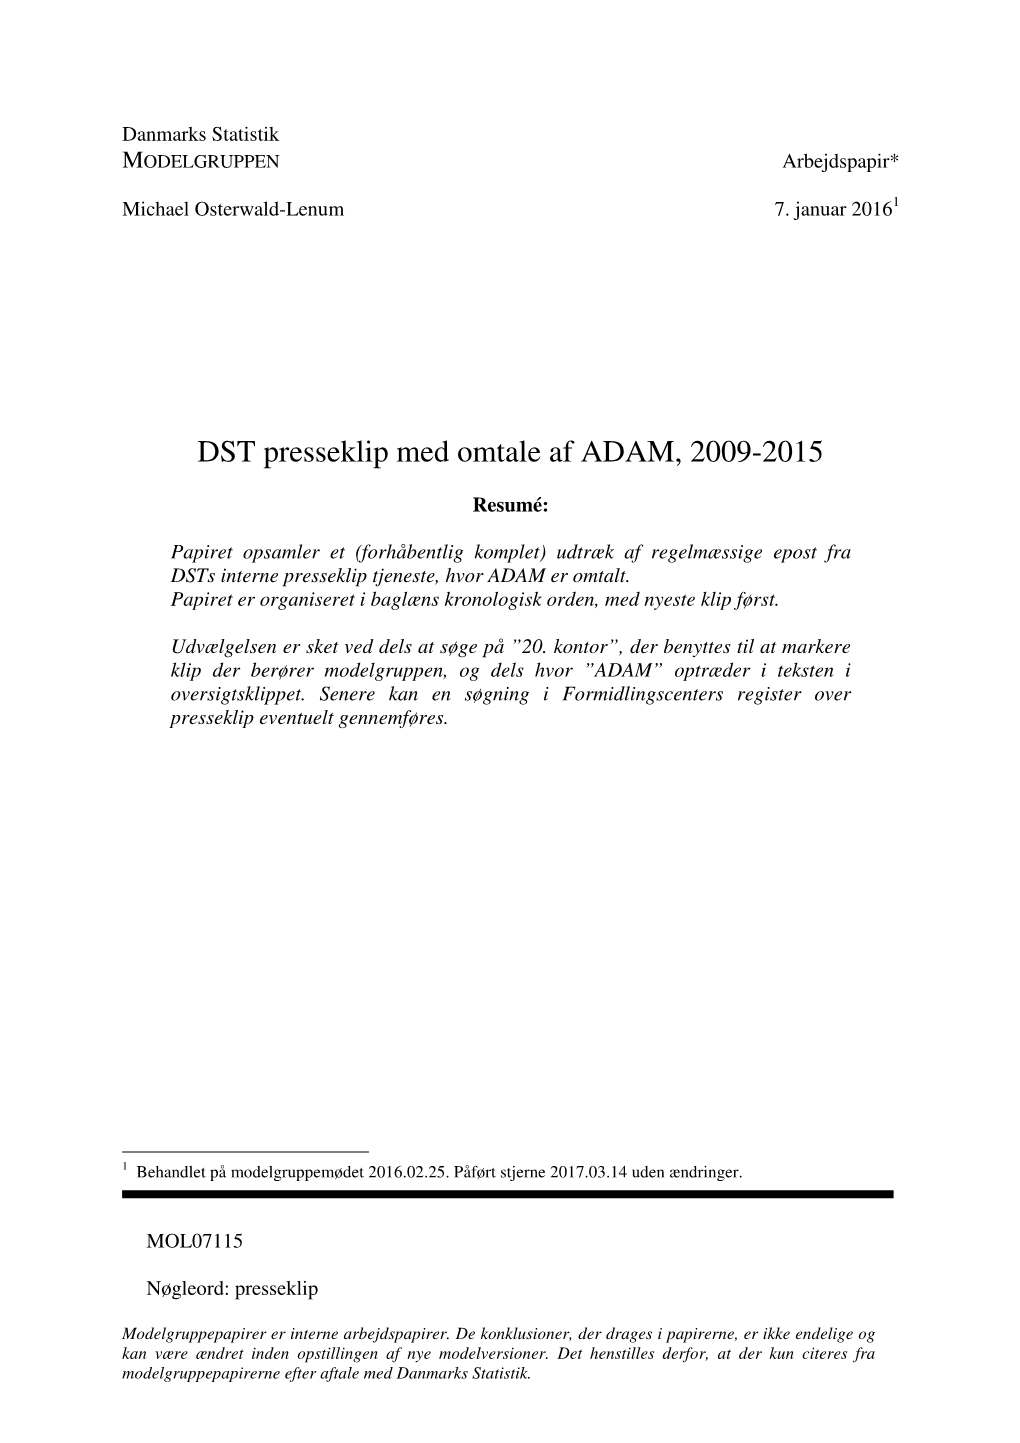 DST Presseklip Med Omtale Af ADAM, 2009-2015